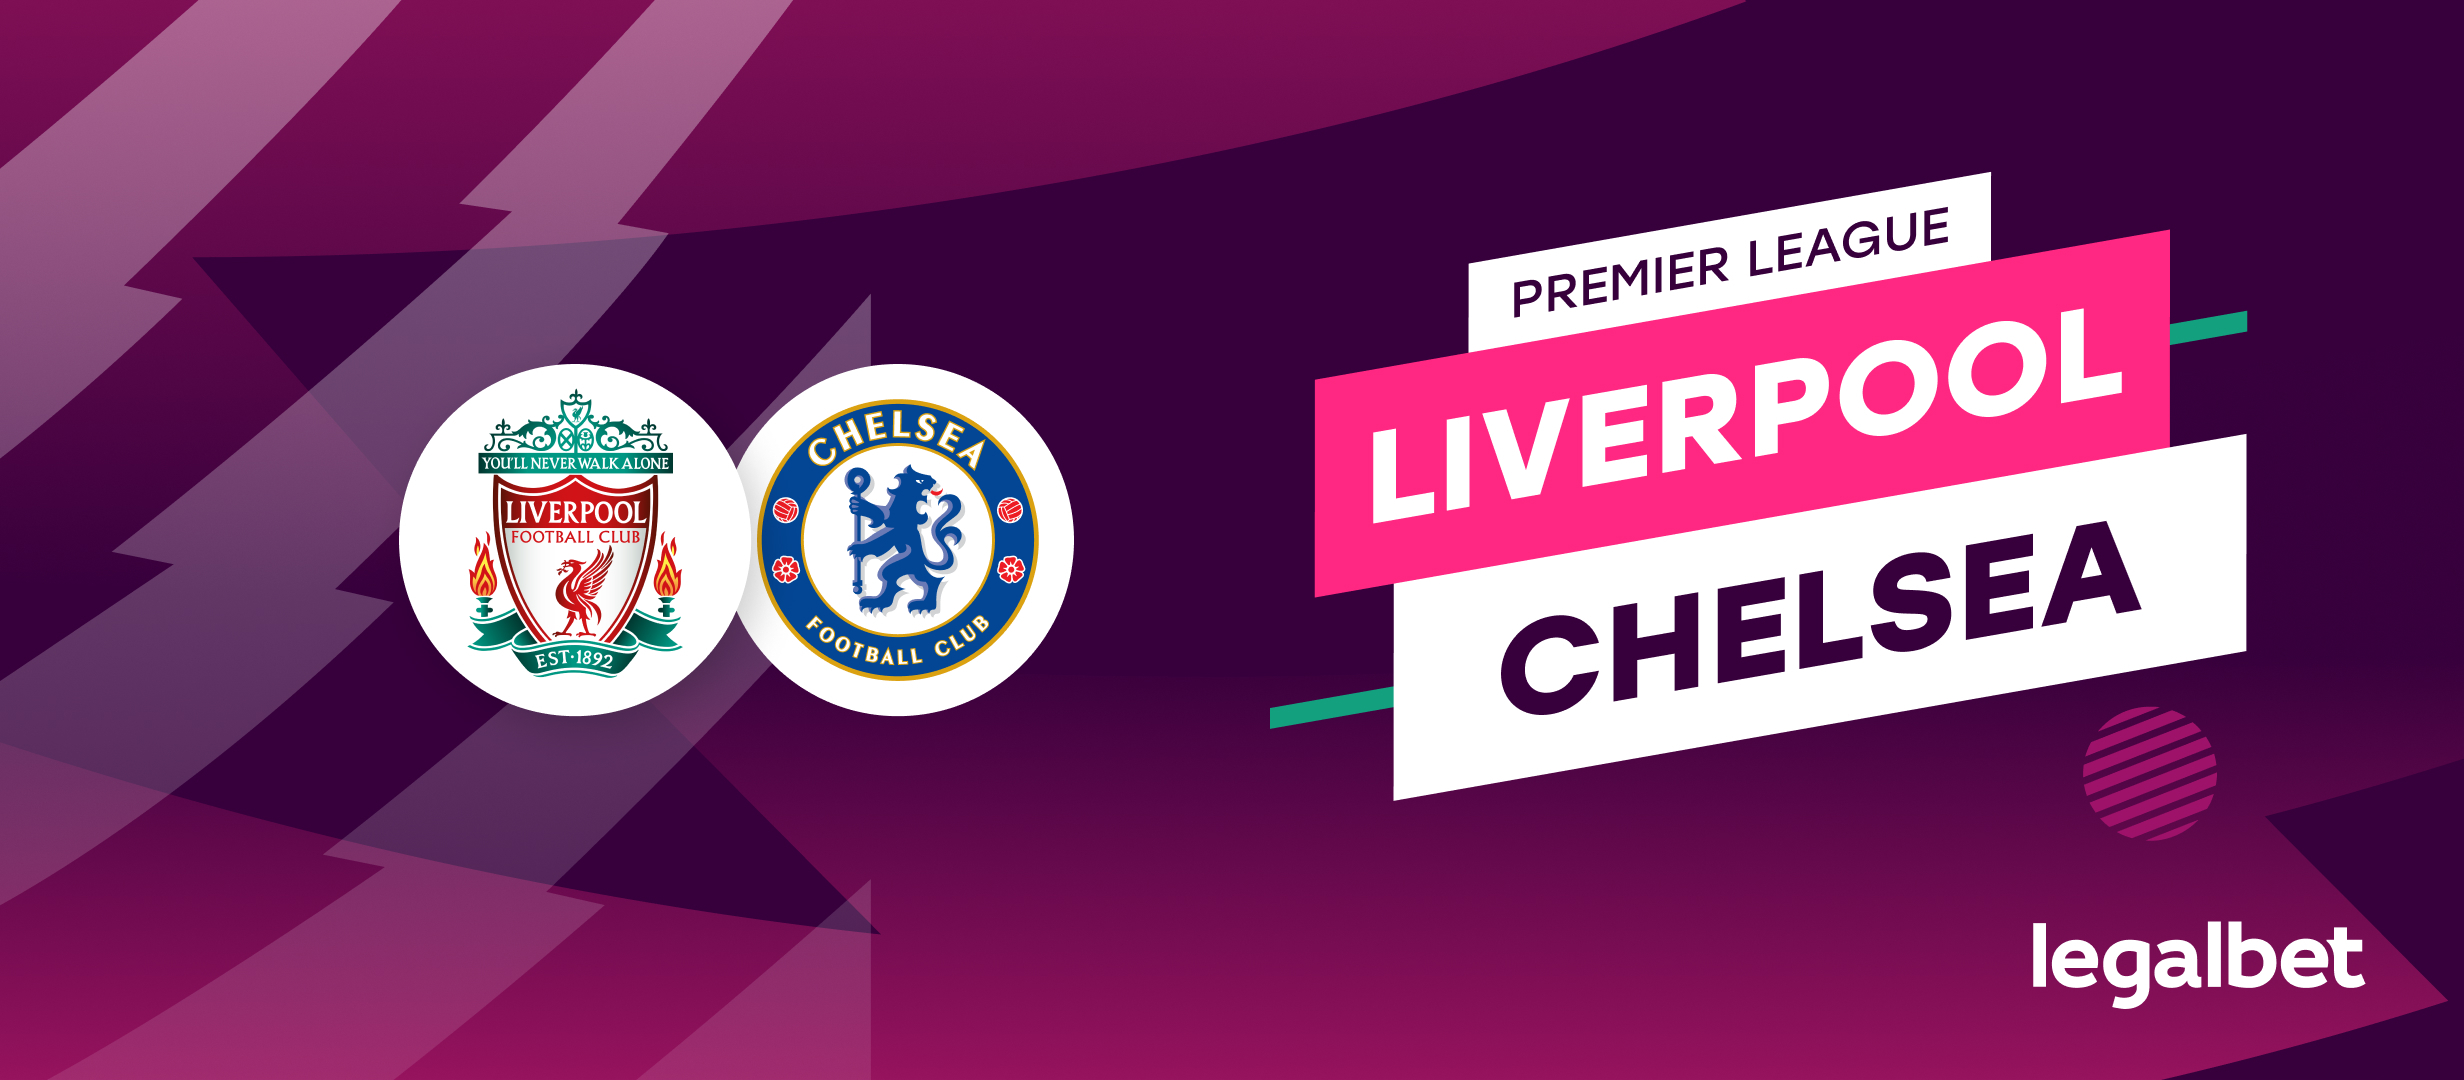 Liverpool - Chelsea, ponturi la pariuri Premier League